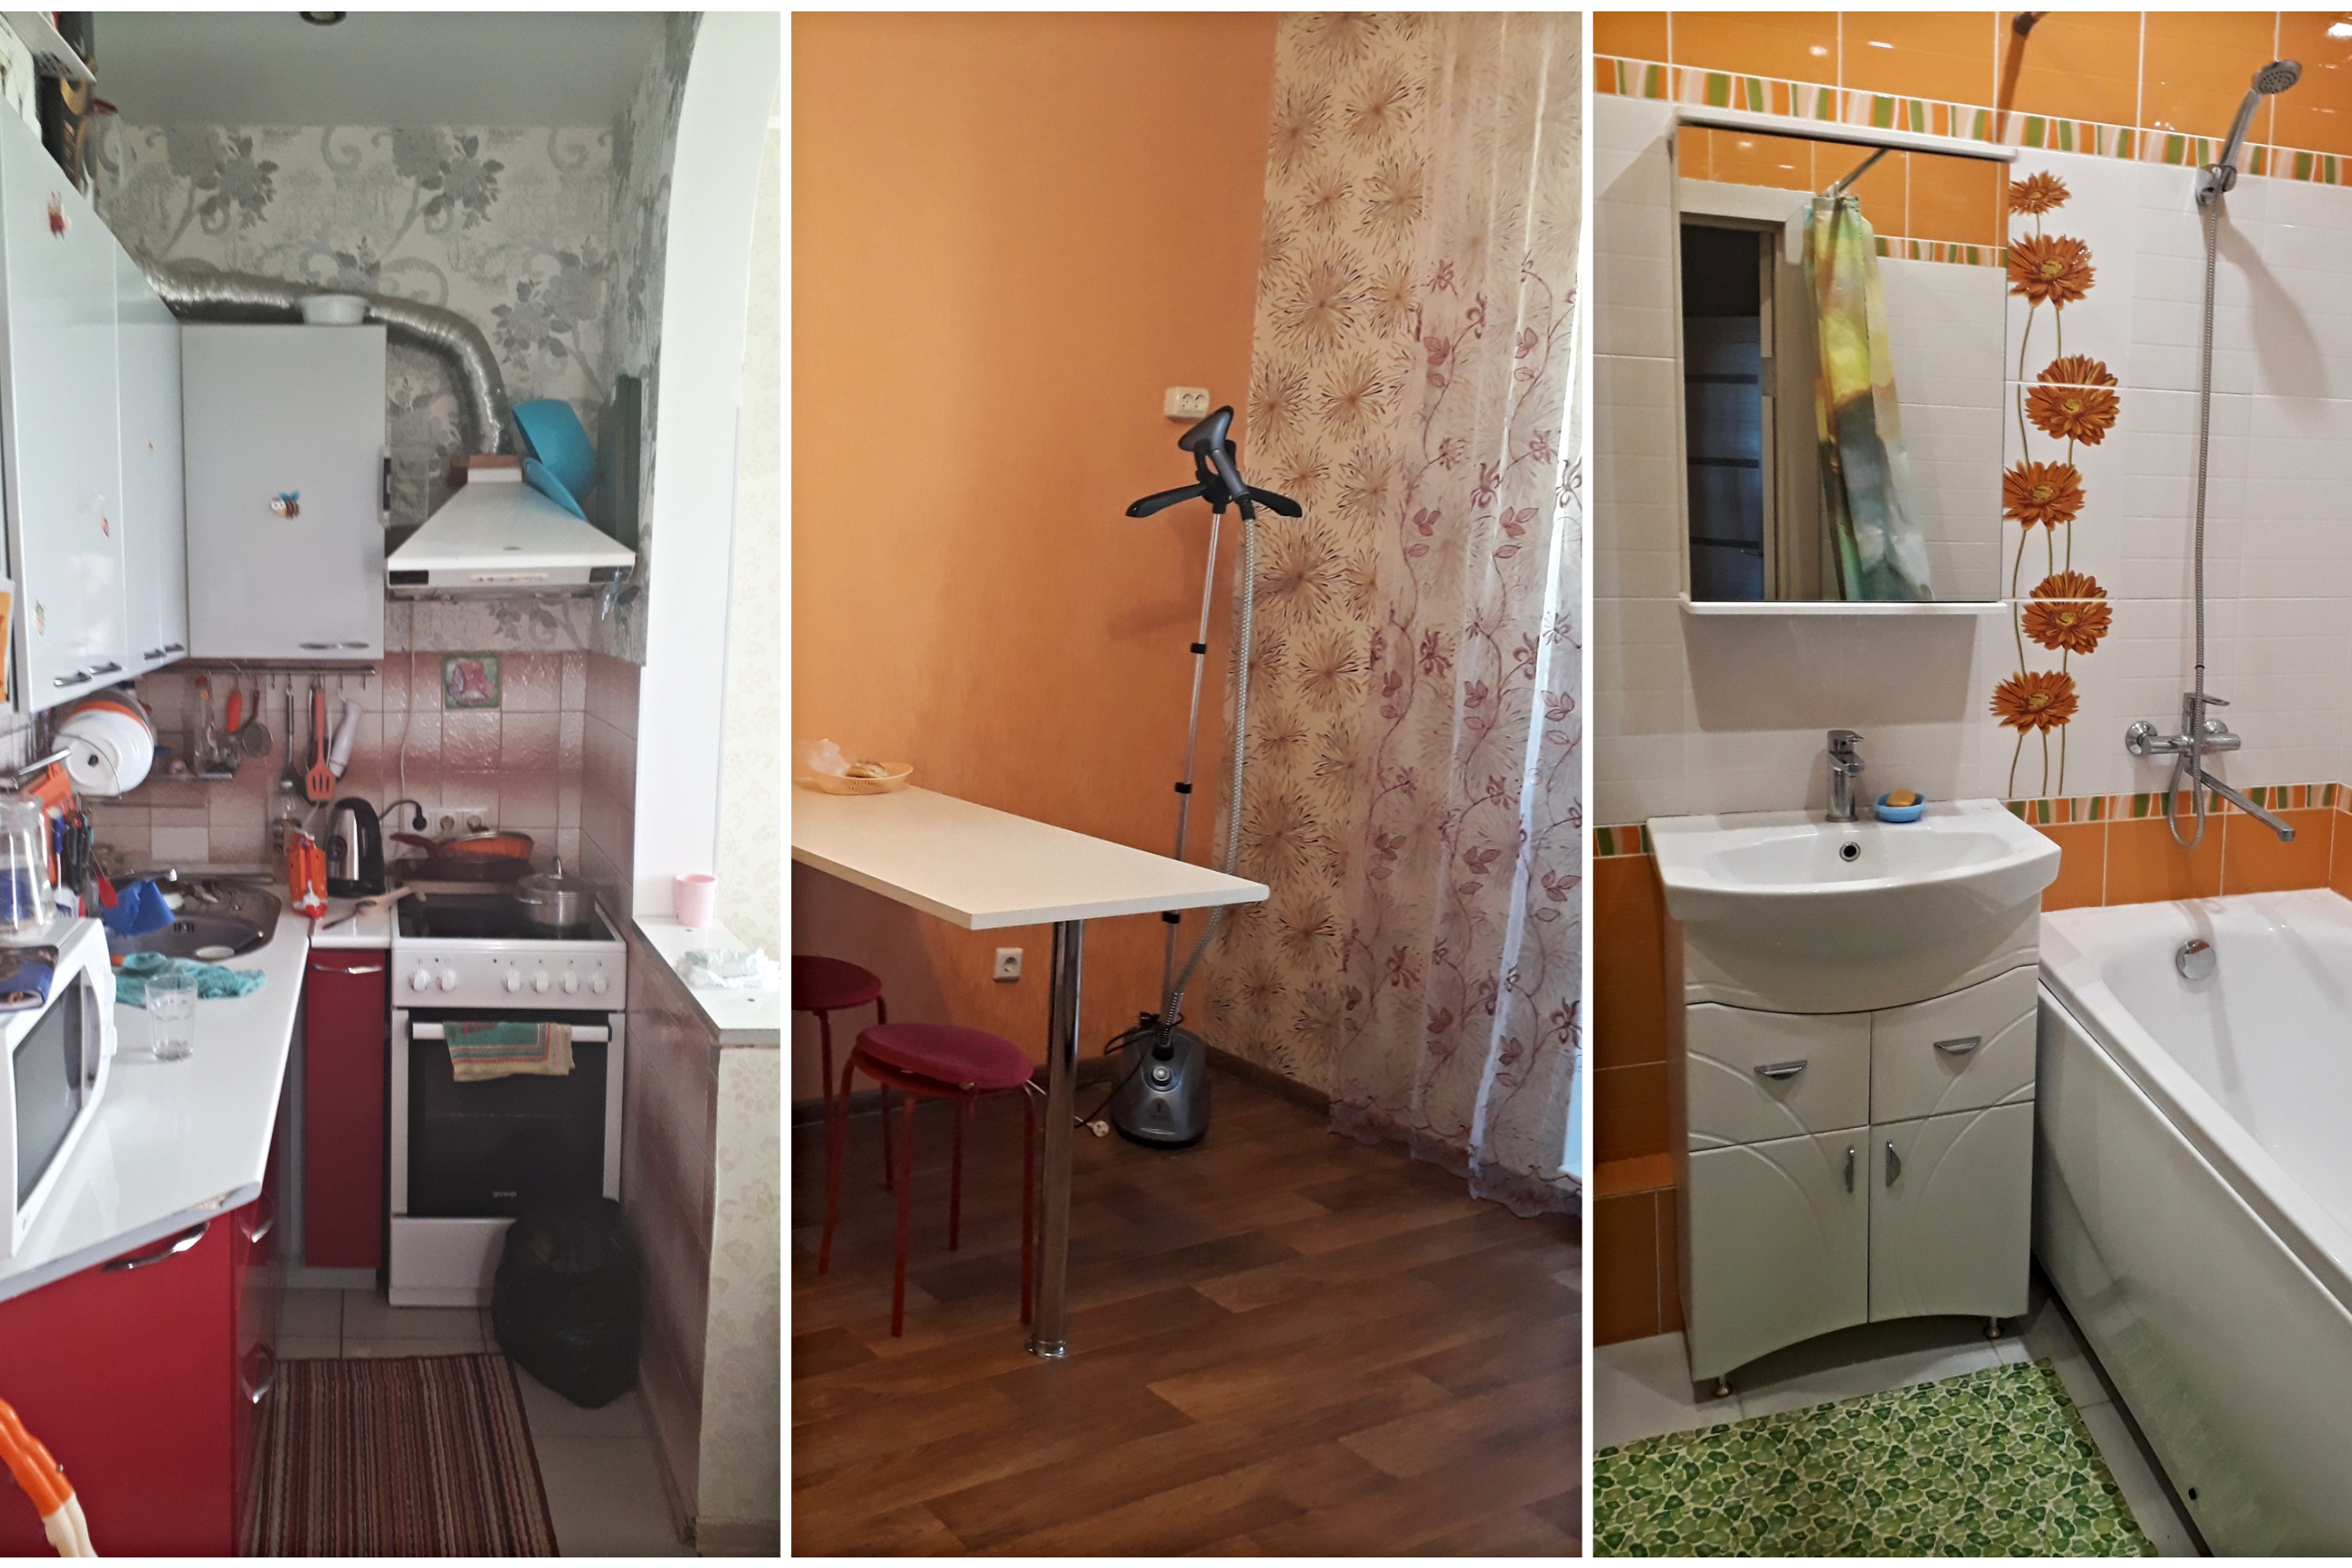 Маленькая квартплата, тесно даже двоим: истории тюменцев, поселившихся в  крошечных квартирах-студиях - 16 ноября 2018 - 72.ru